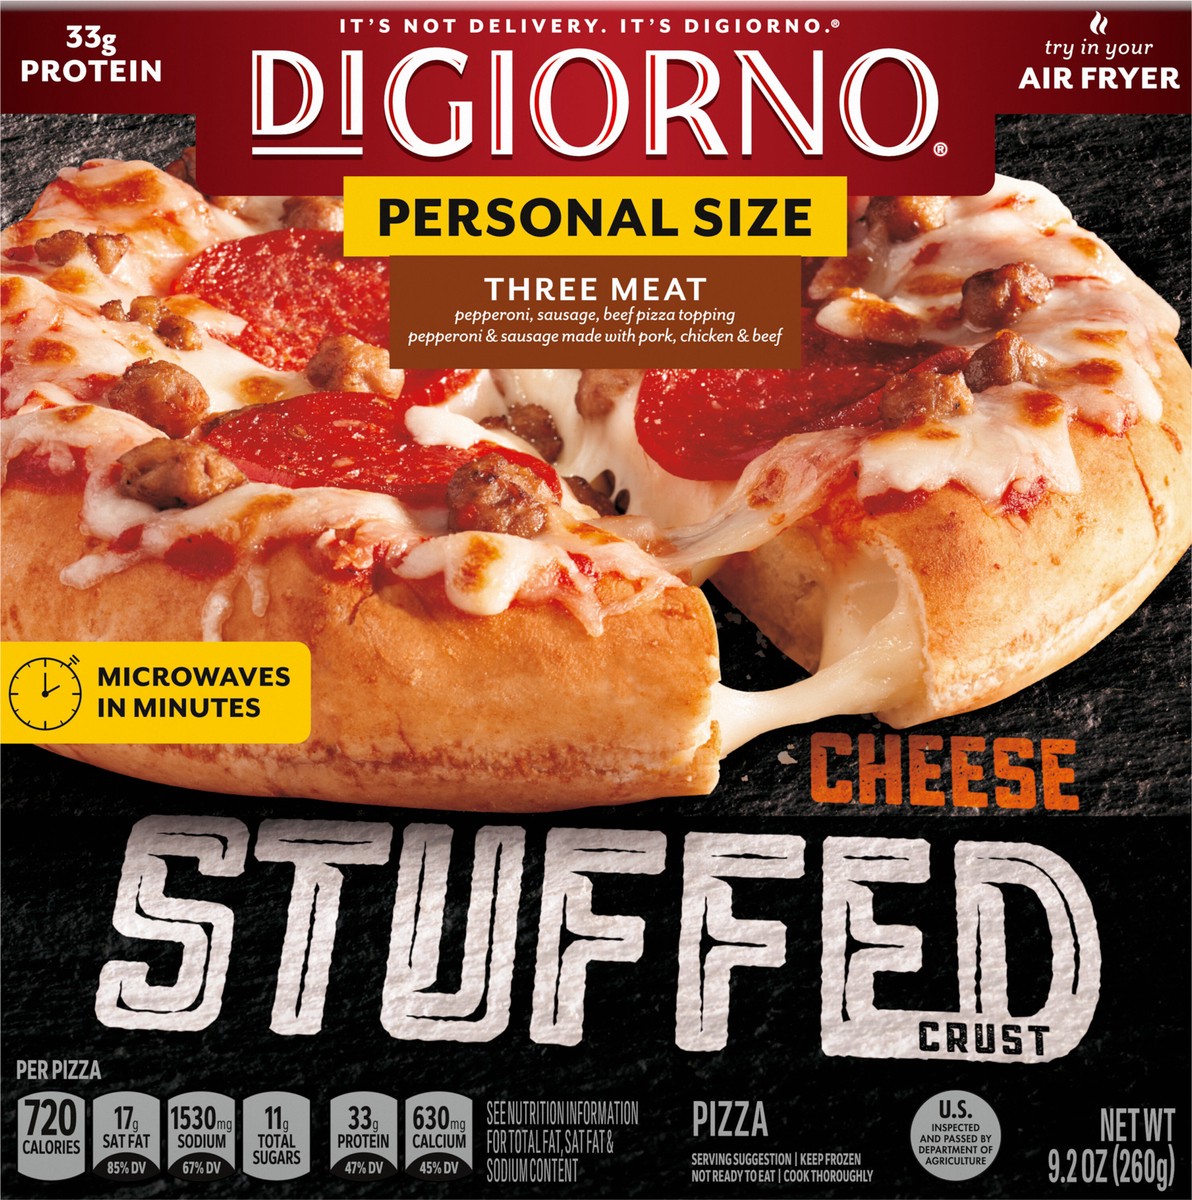 slide 6 of 9, DIGIORNO Frozen Pizza - Three Meat Stuffed Crust Pizza - Personal Pizza, 9.2 oz